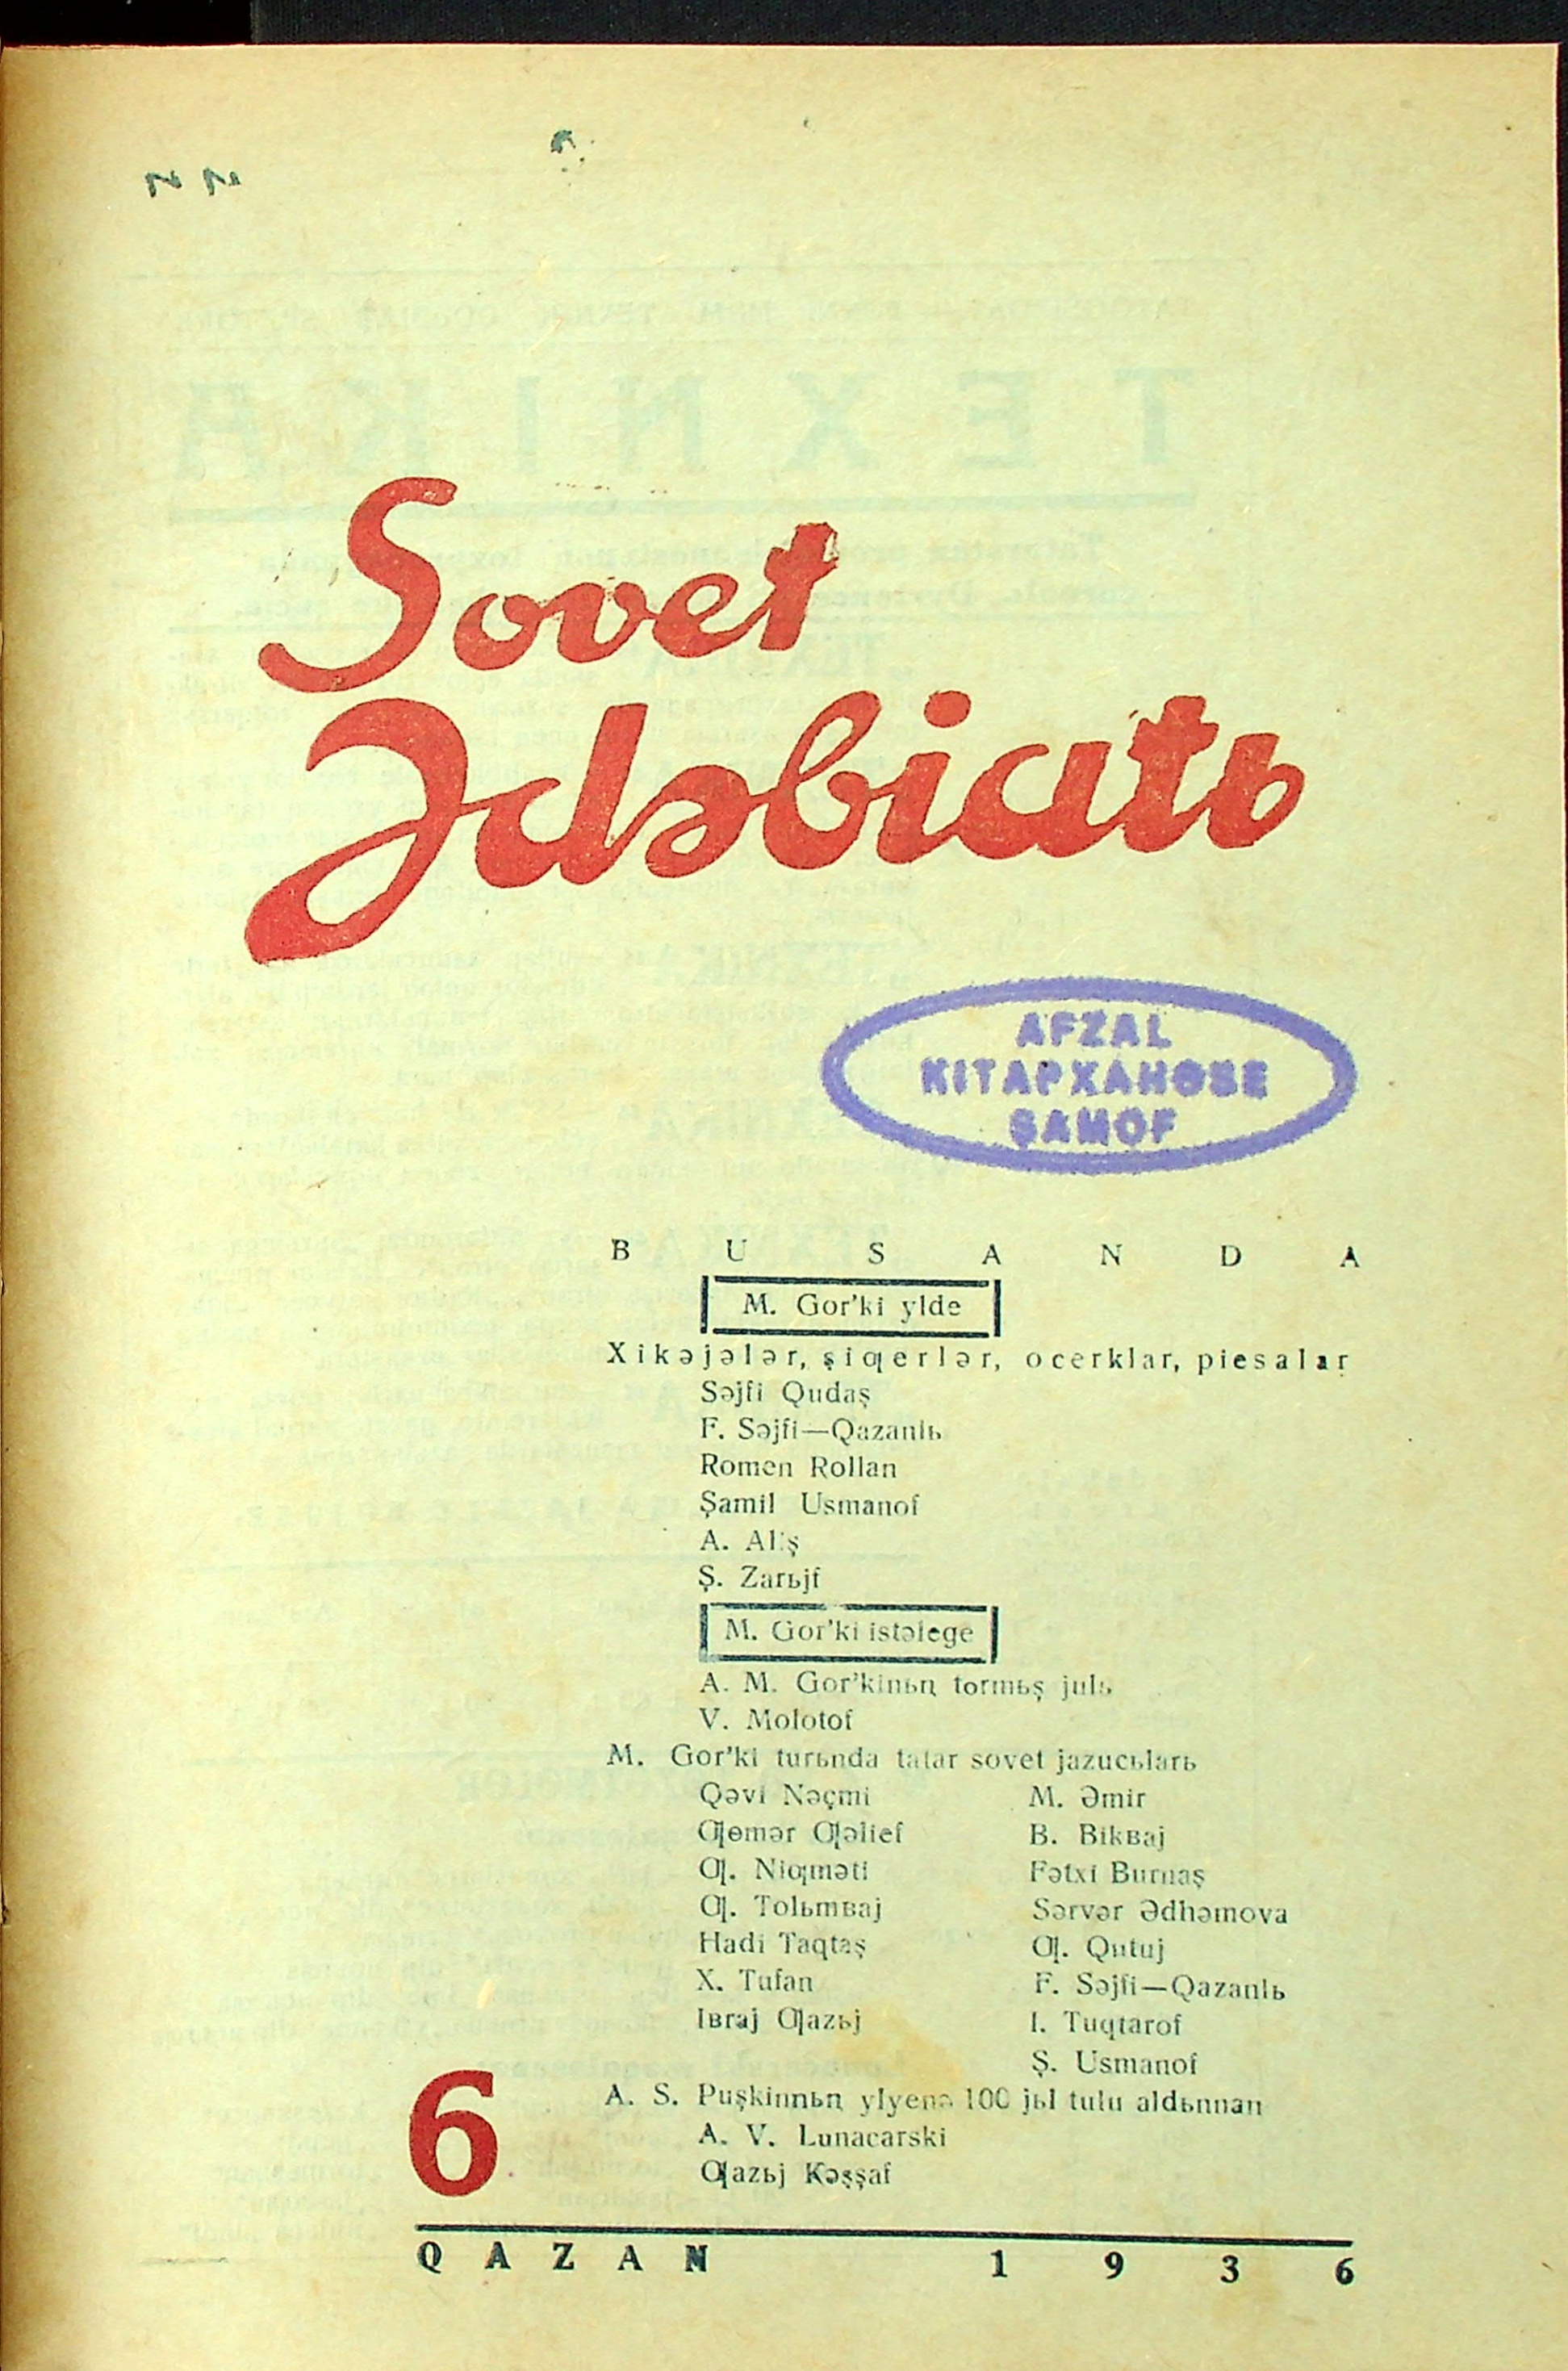 Фото журнала 1936 года. Выпуск номер 5